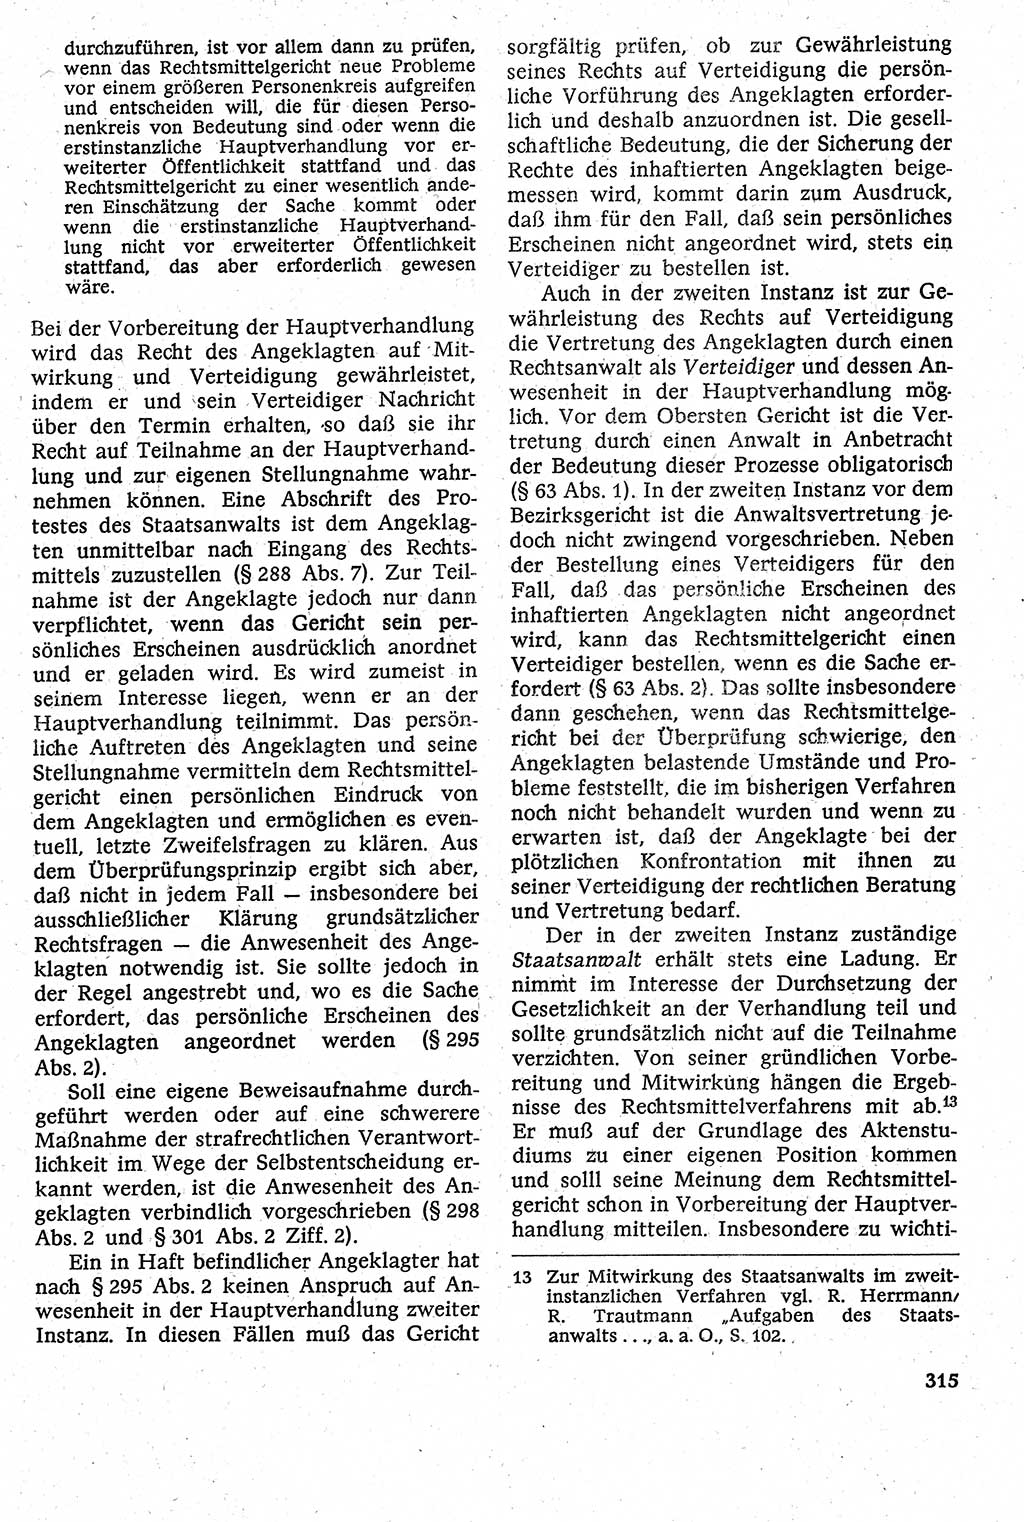 Strafverfahrensrecht [Deutsche Demokratische Republik (DDR)], Lehrbuch 1982, Seite 315 (Strafverf.-R. DDR Lb. 1982, S. 315)